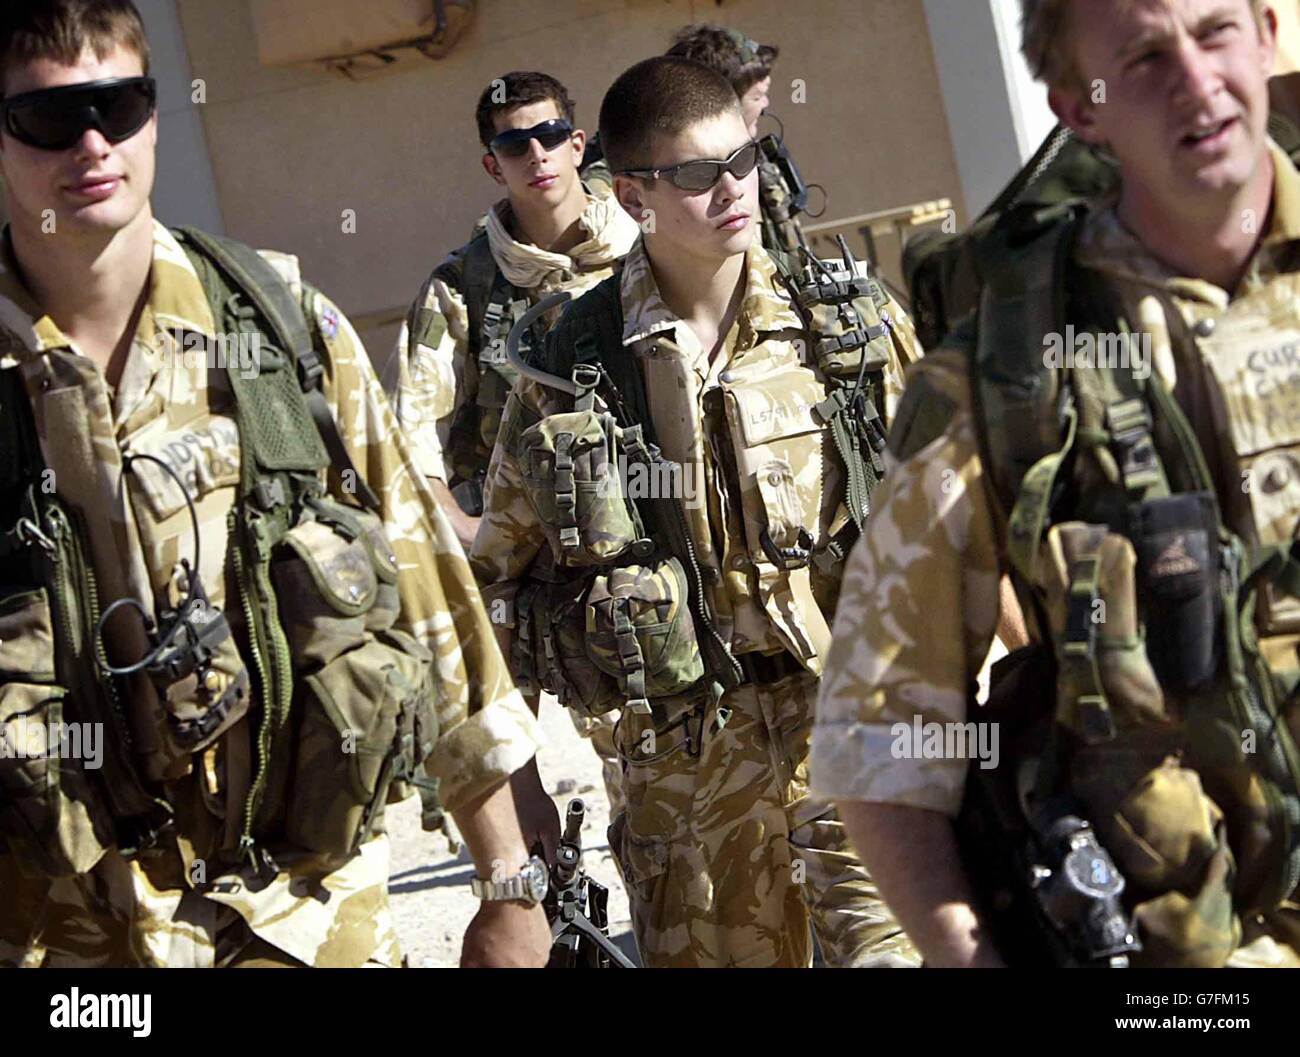 Britische Royal Marines Commandos, die an das Black Watch Regiment angeschlossen sind, gehen mit ihrer Kampfausrüstung vor einer Mission im Camp Dogwood 25 Meilen südlich von Bagdad, Irak. Stockfoto